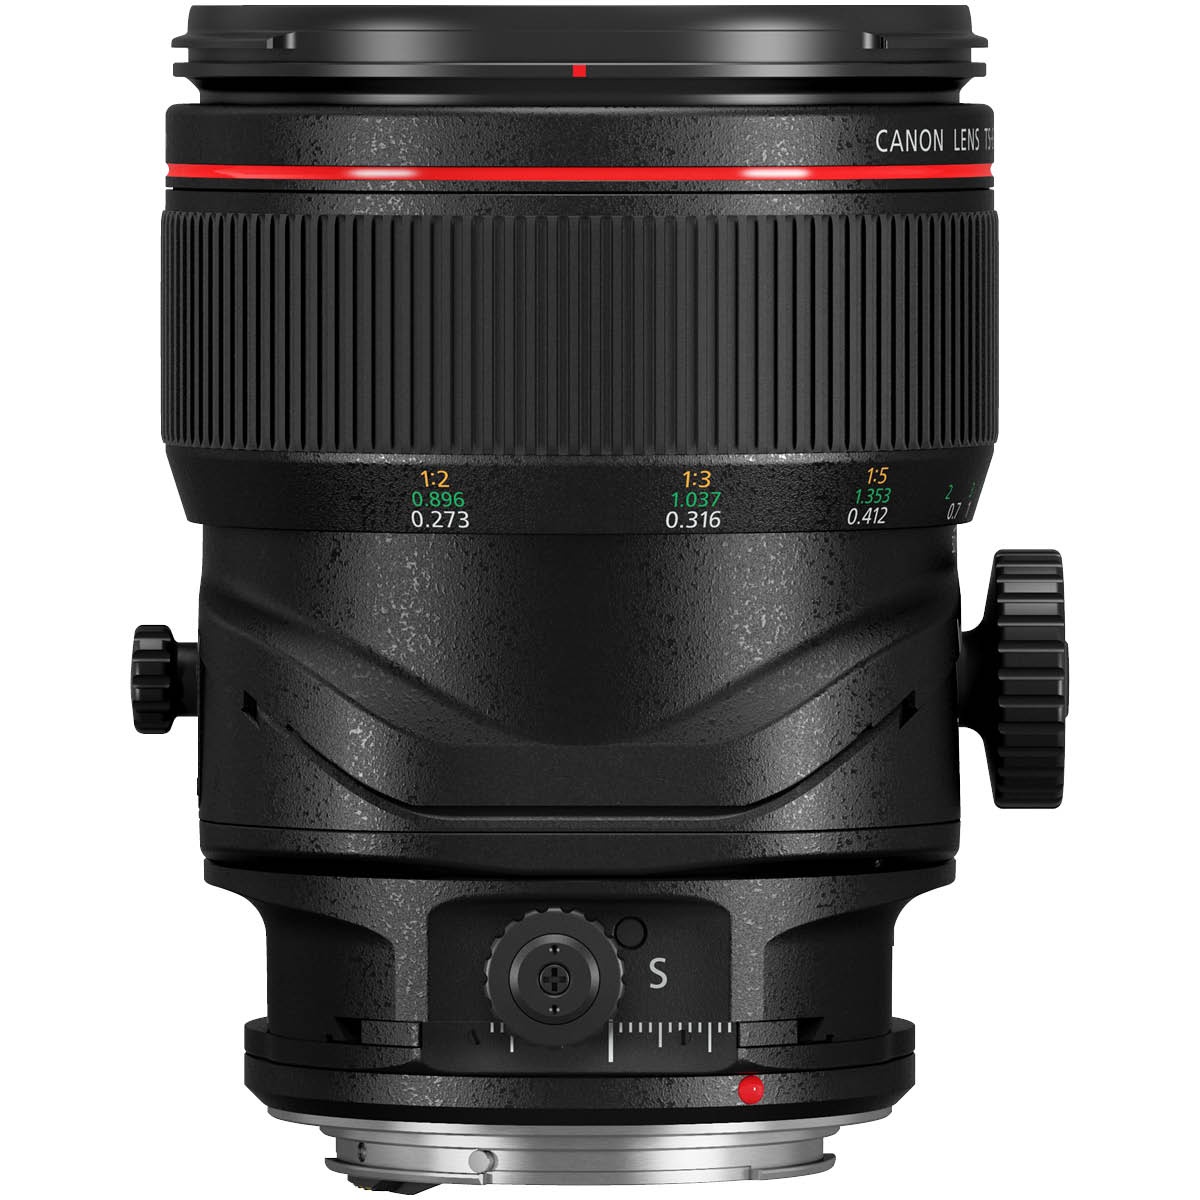 Canon EF 50 mm 1:2,8 L TS-E Macro